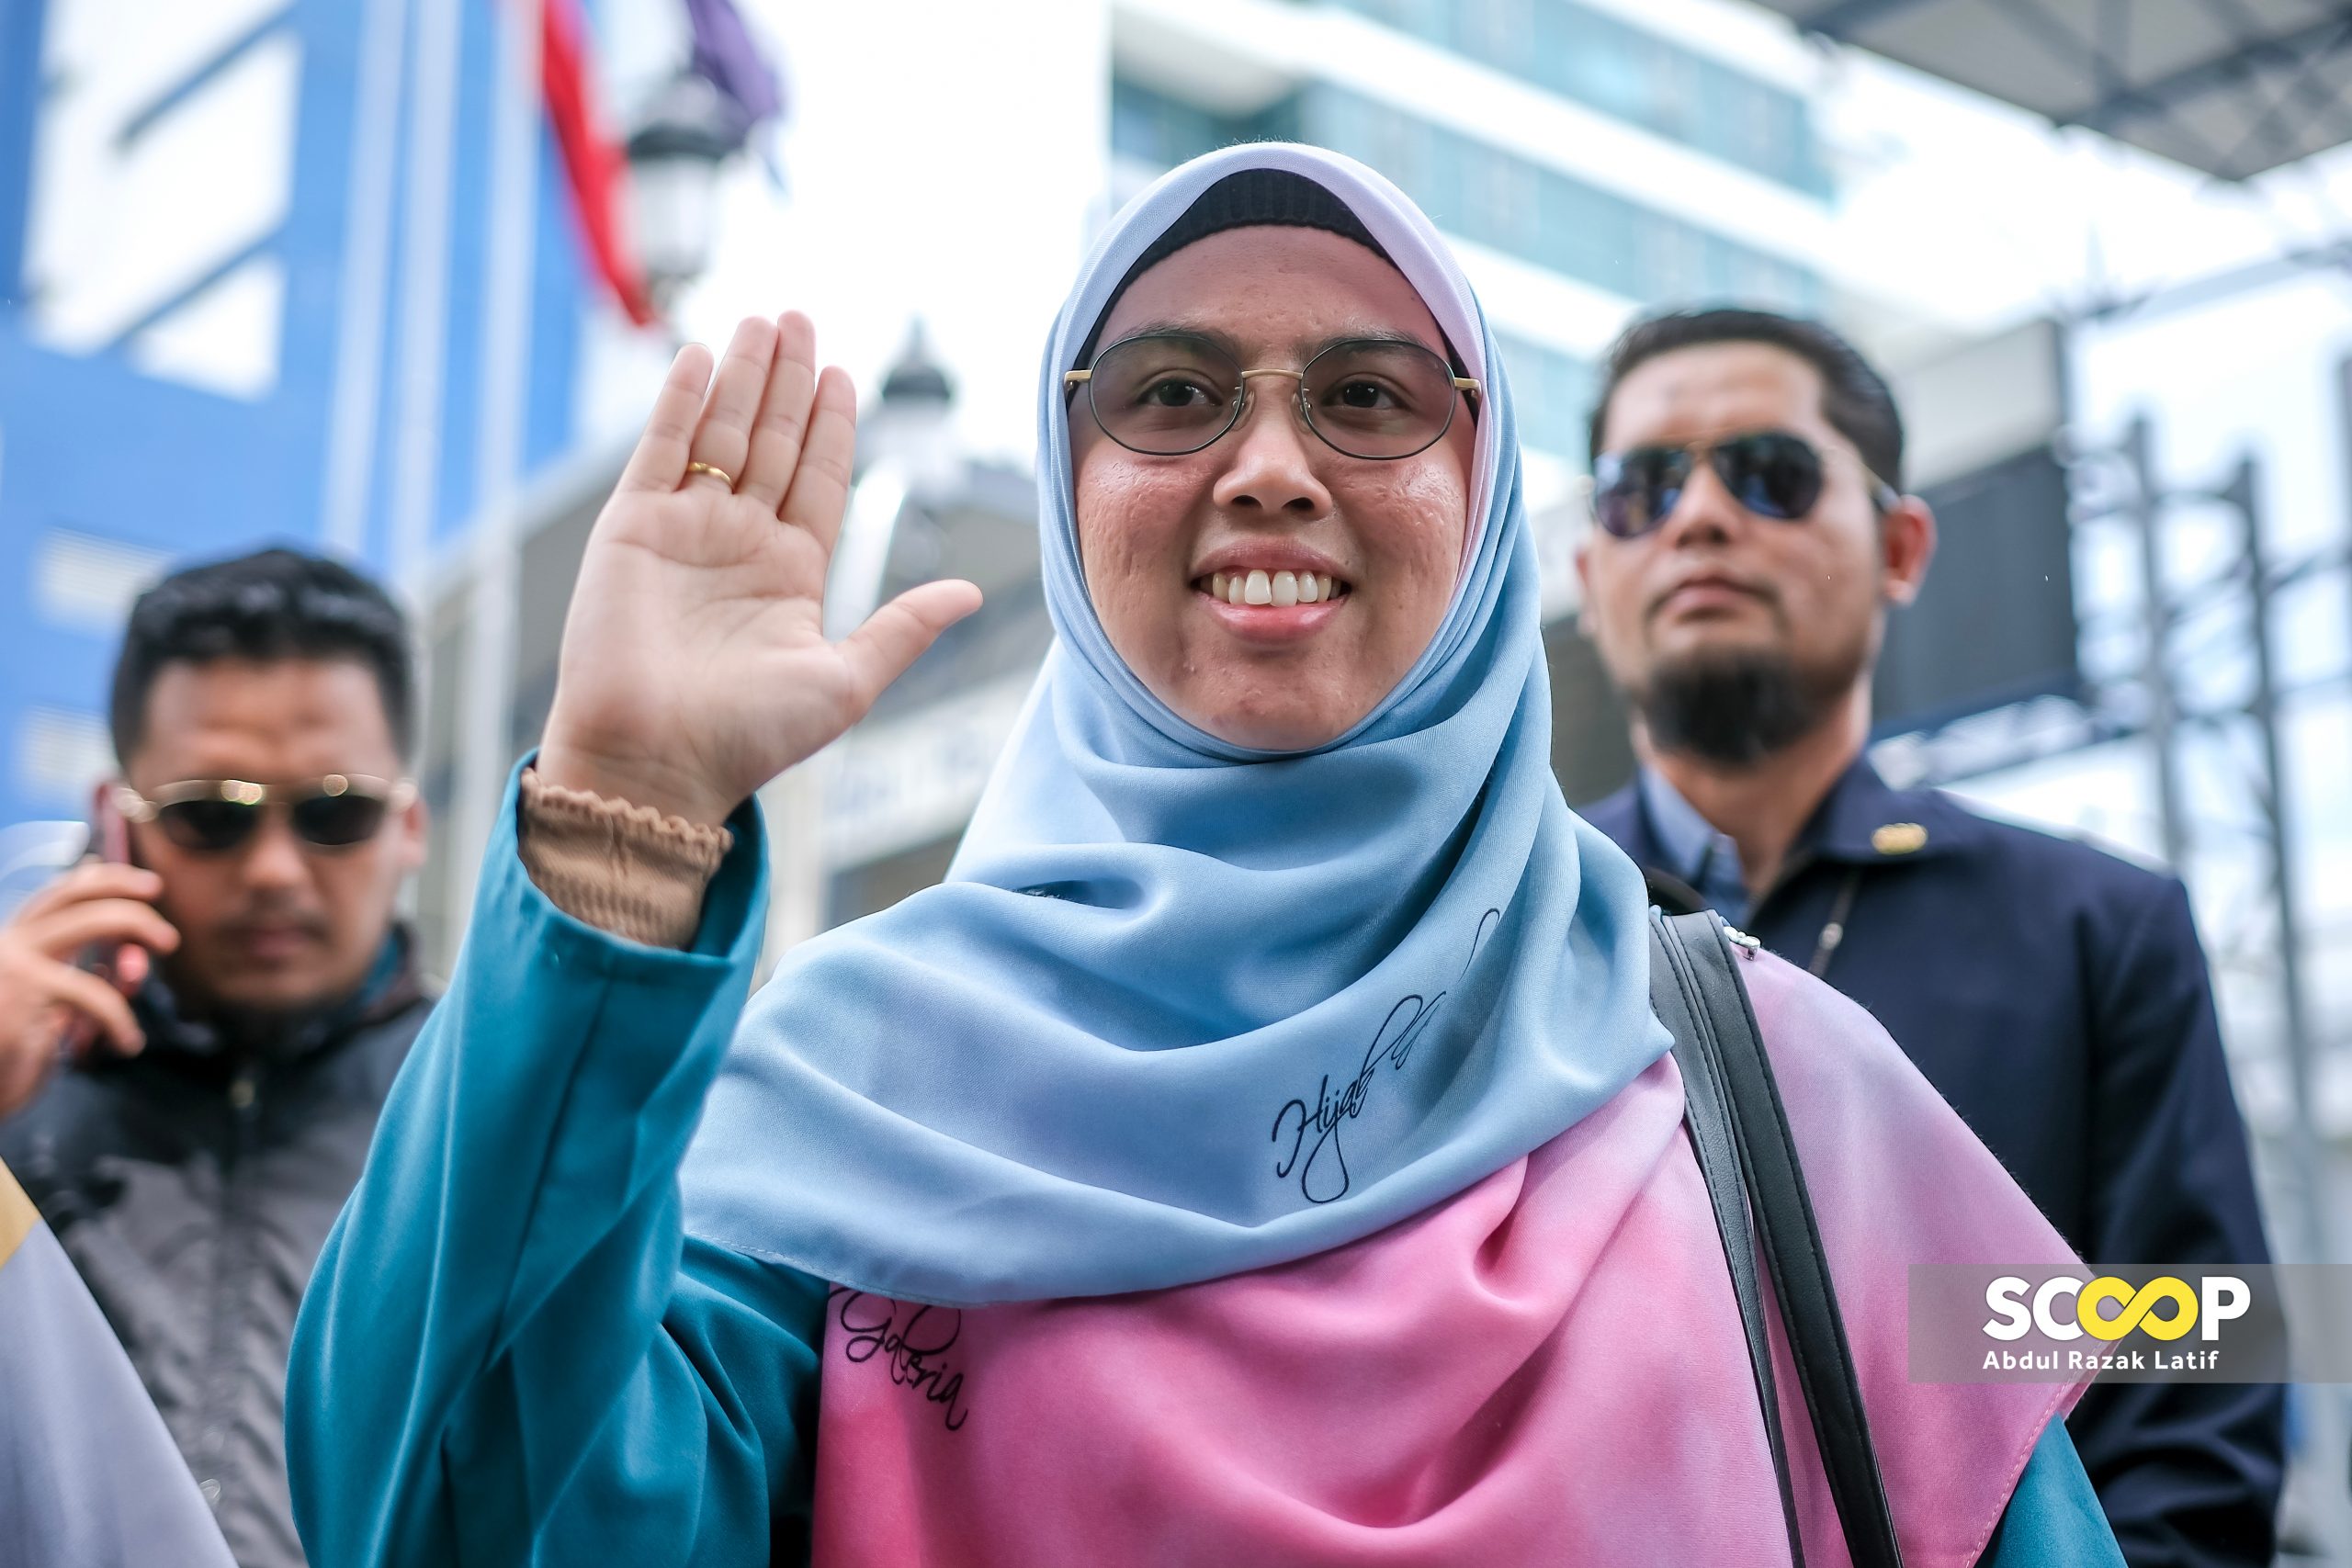 DAP trio, PAS rep Siti Mastura headed to court after mediation fails